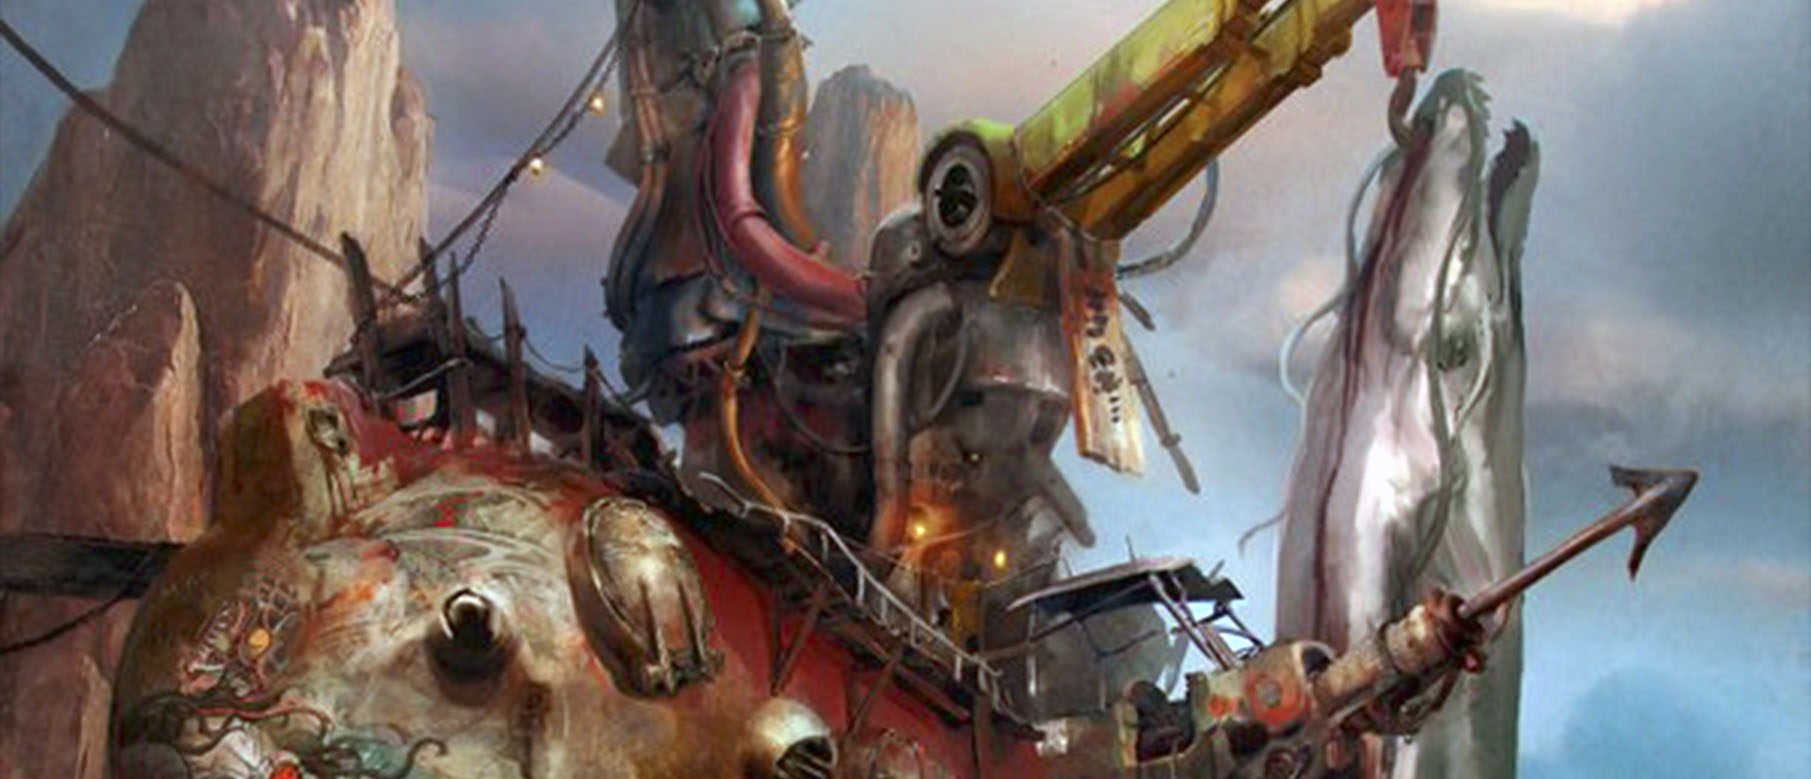 Изображение к MercurySteam зарегистрировали торговую марку Raiders of the Broken Planet, анонс уже скоро, несколько новых концепт-артов